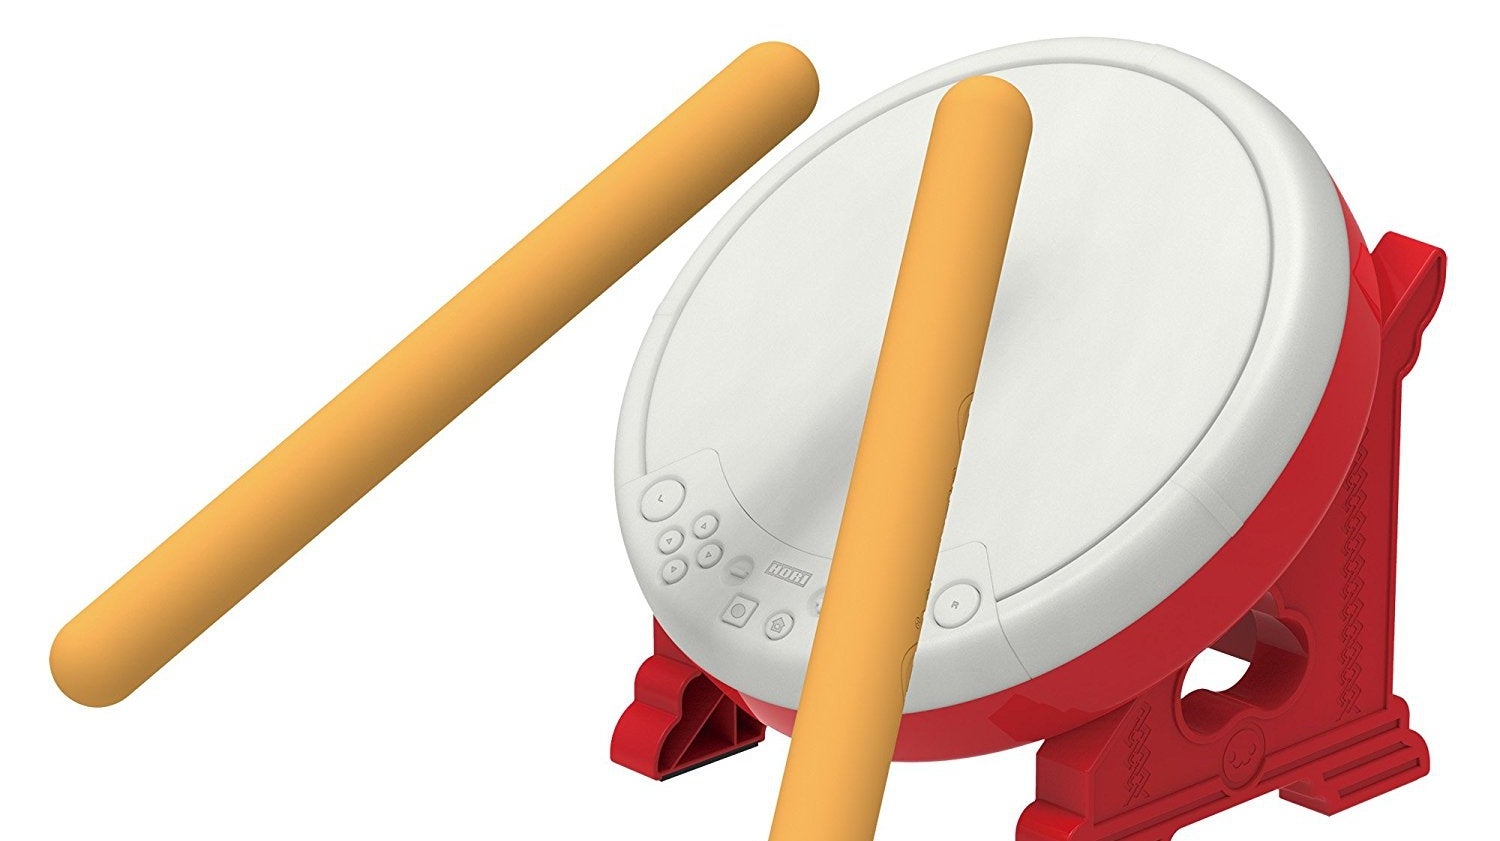 Imagen para El tambor de Taiko no Tatsujin para Switch llegará a Europa